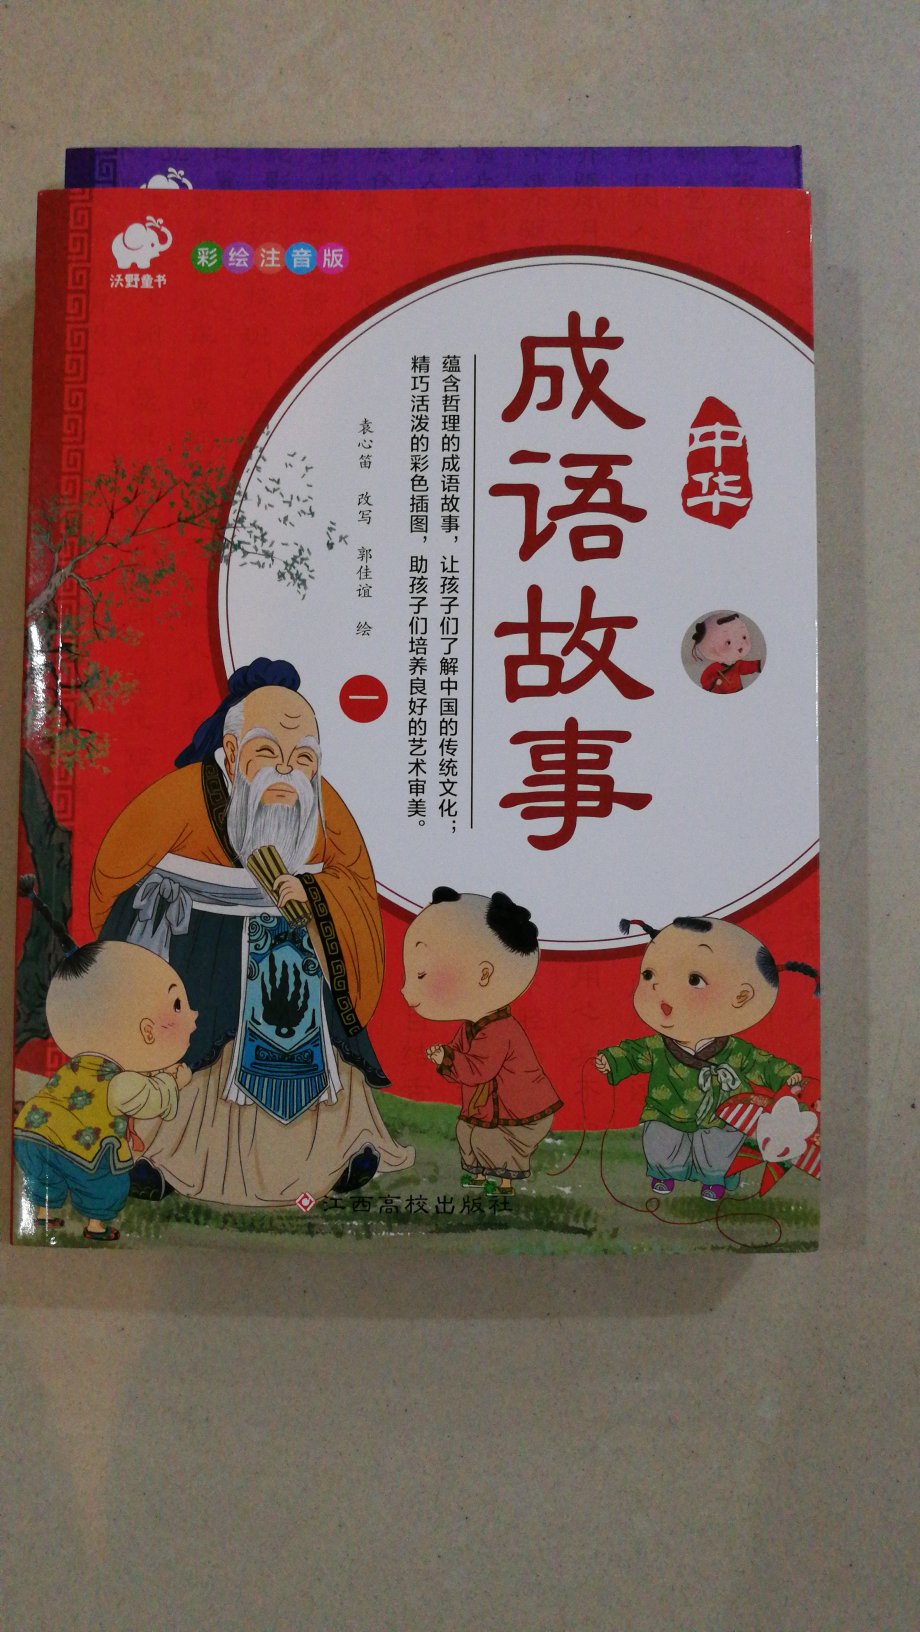 中华成语故事的书确实挺不错的，挺喜欢。